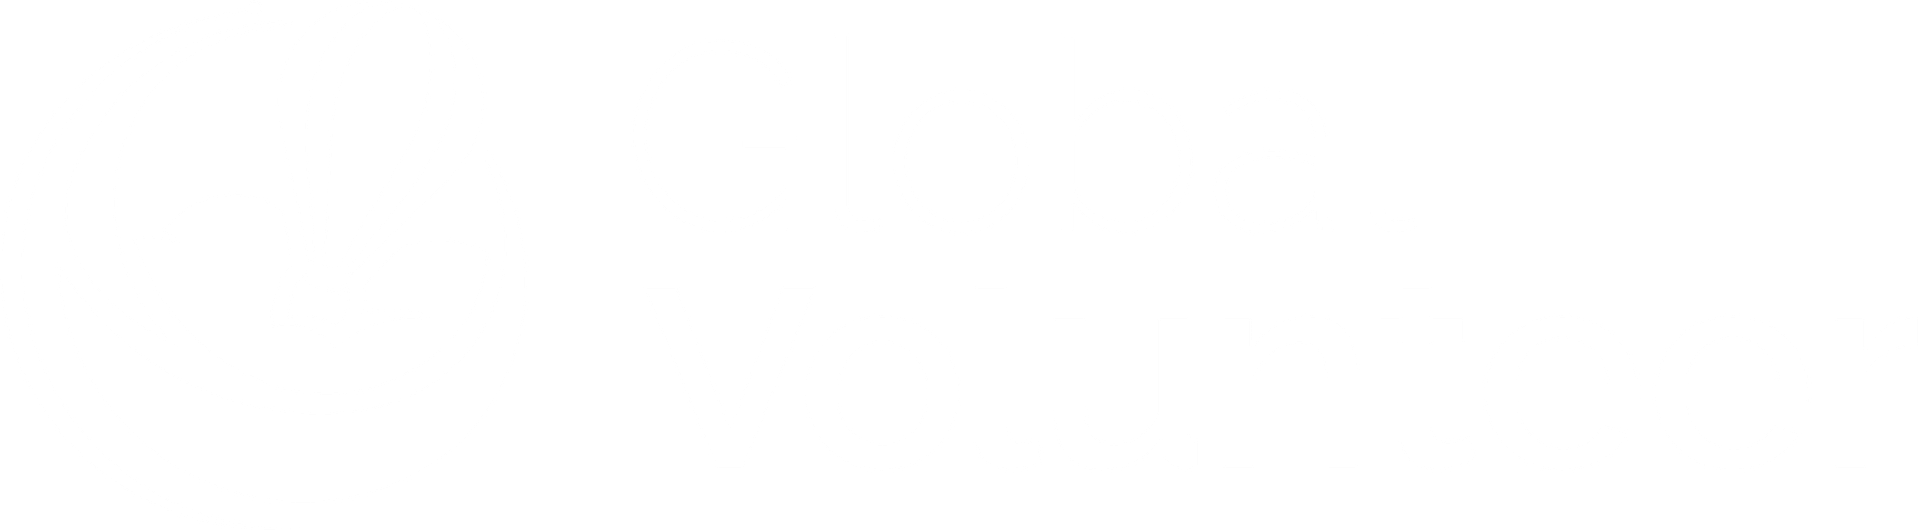 Global Volunteer